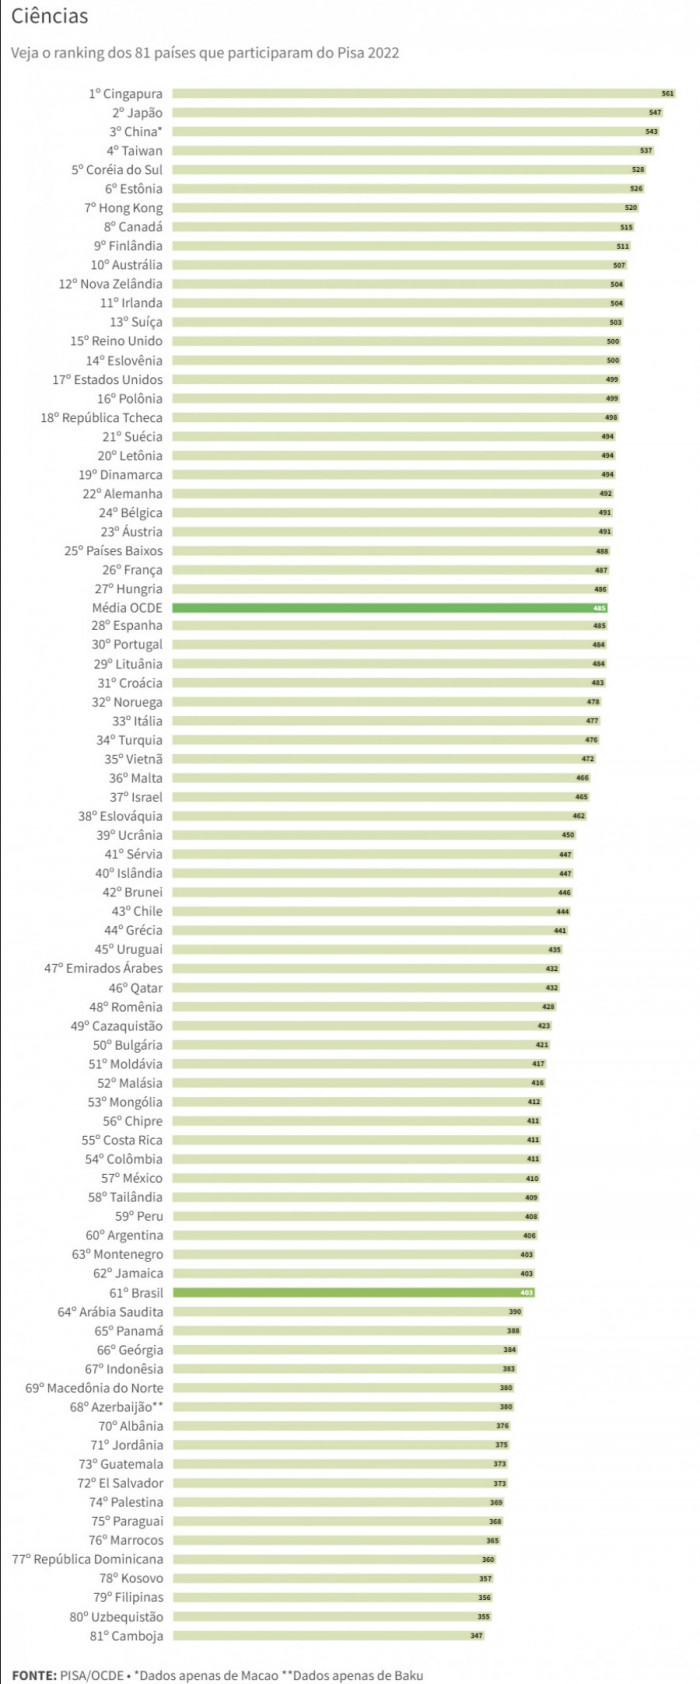  Em Ciência, o Brasil aparece em 61º lugar, abaixo da Argentina e do Peru, e com 403 pontos